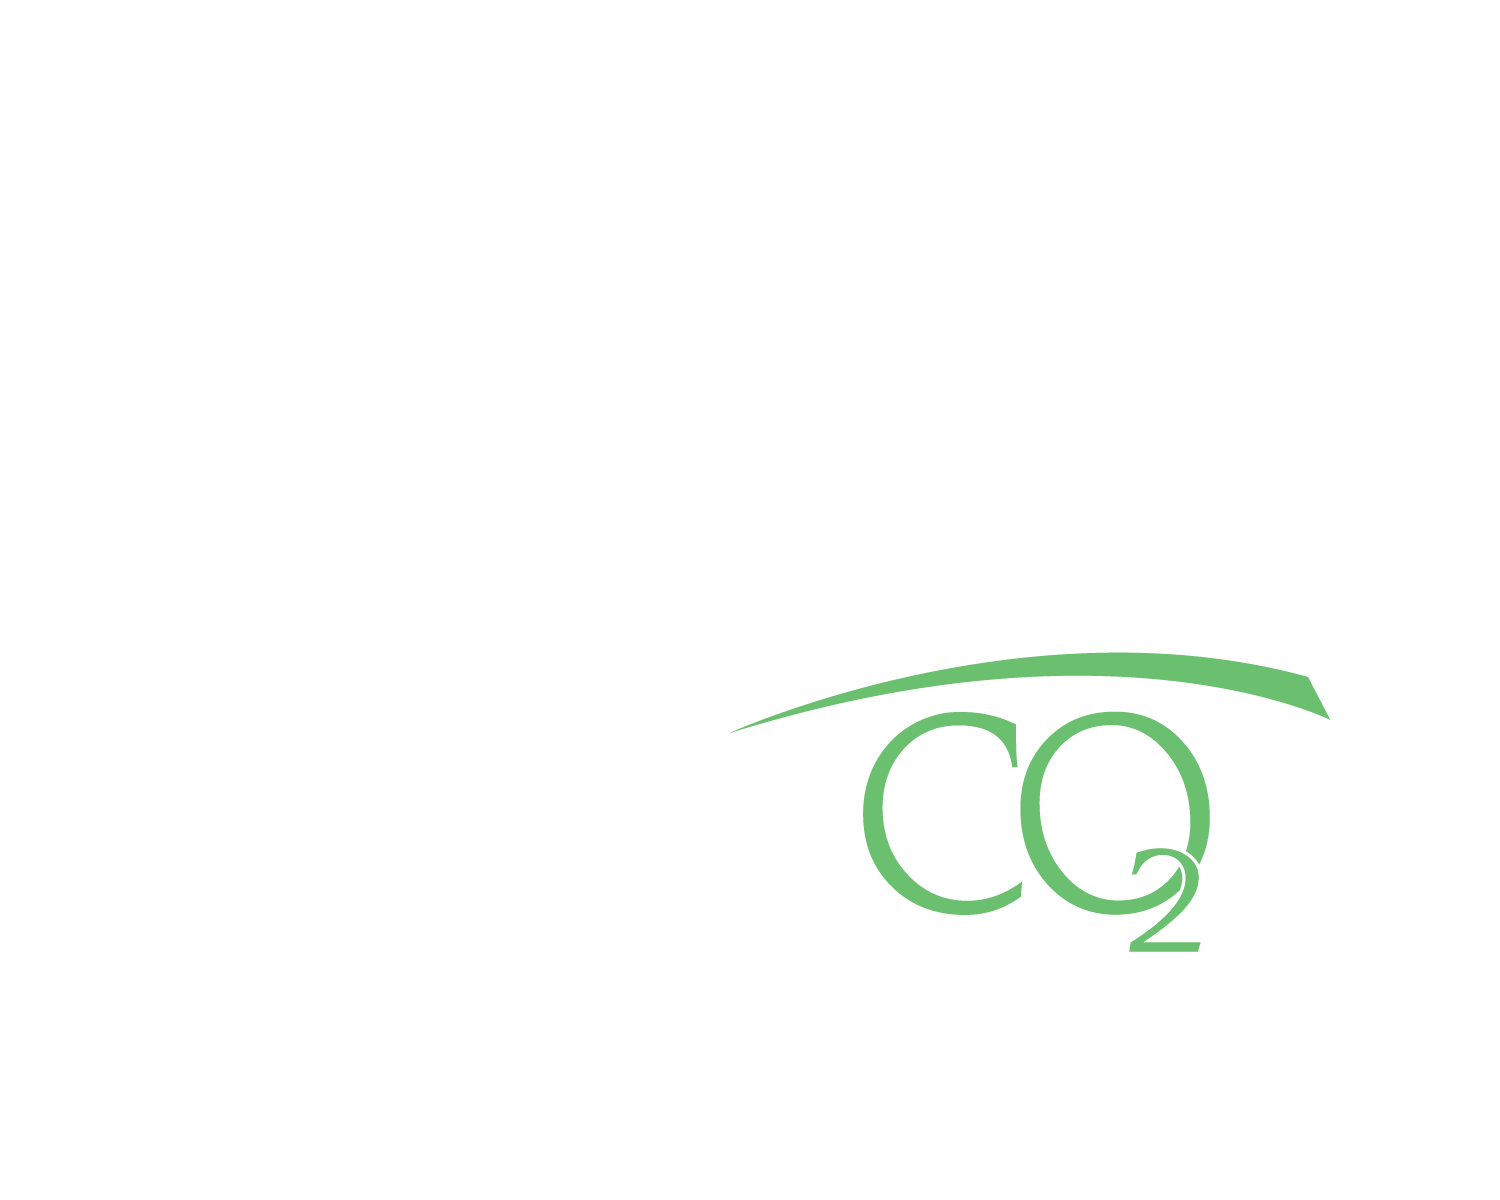 PCOR 20 Year Logo